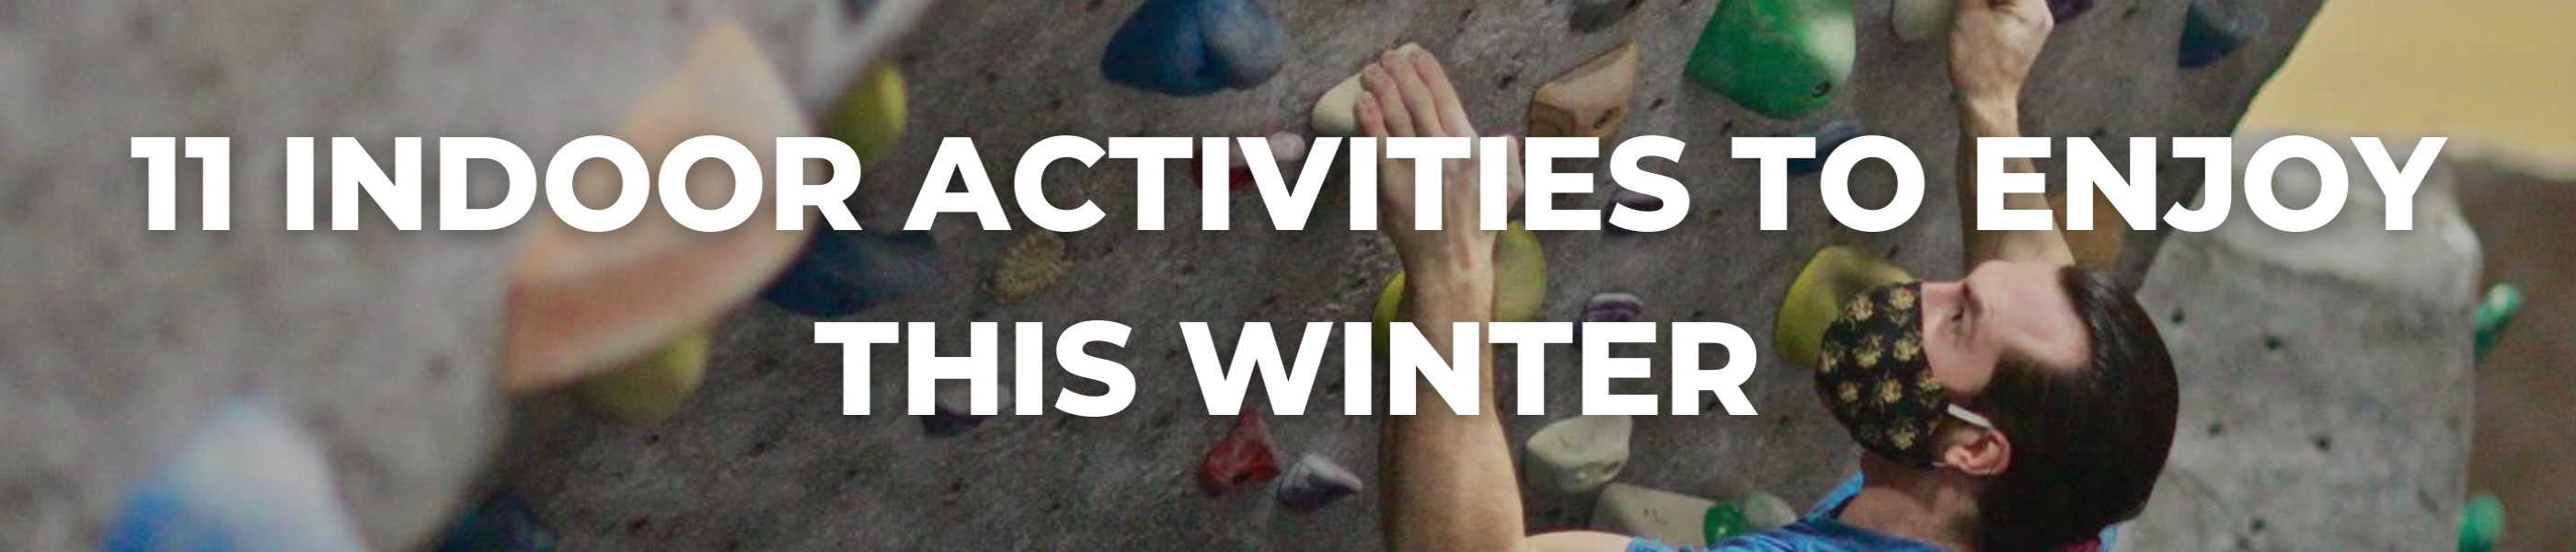 11 INDOOR ACTIVITIES TO ENJOY THIS WINTER, blog header